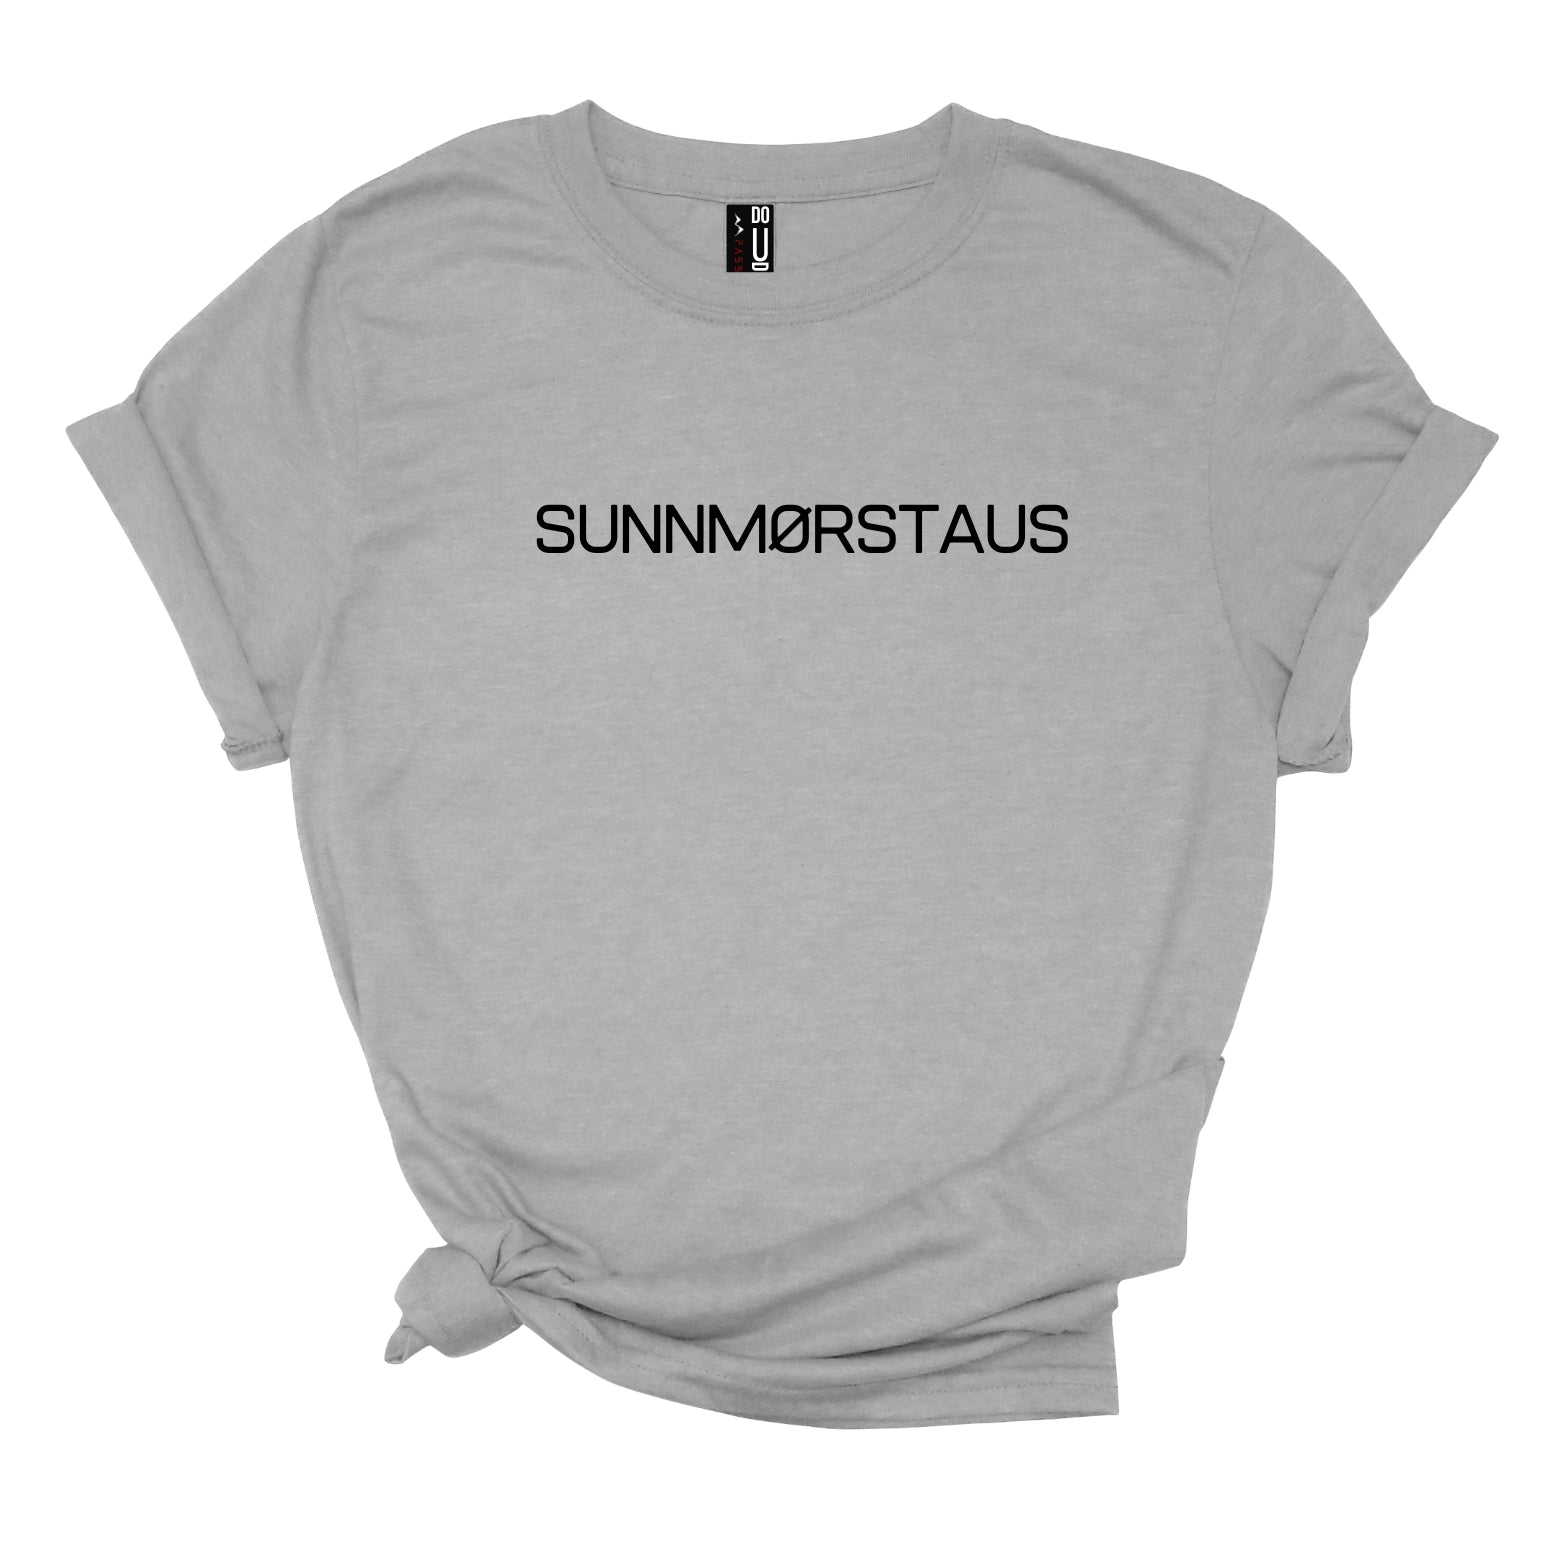 SUNNMØRSTAUS Sunnmørs TEE t-skjorte i dame modell med Sunnmørs-sitat og uttrykk - DoUdare